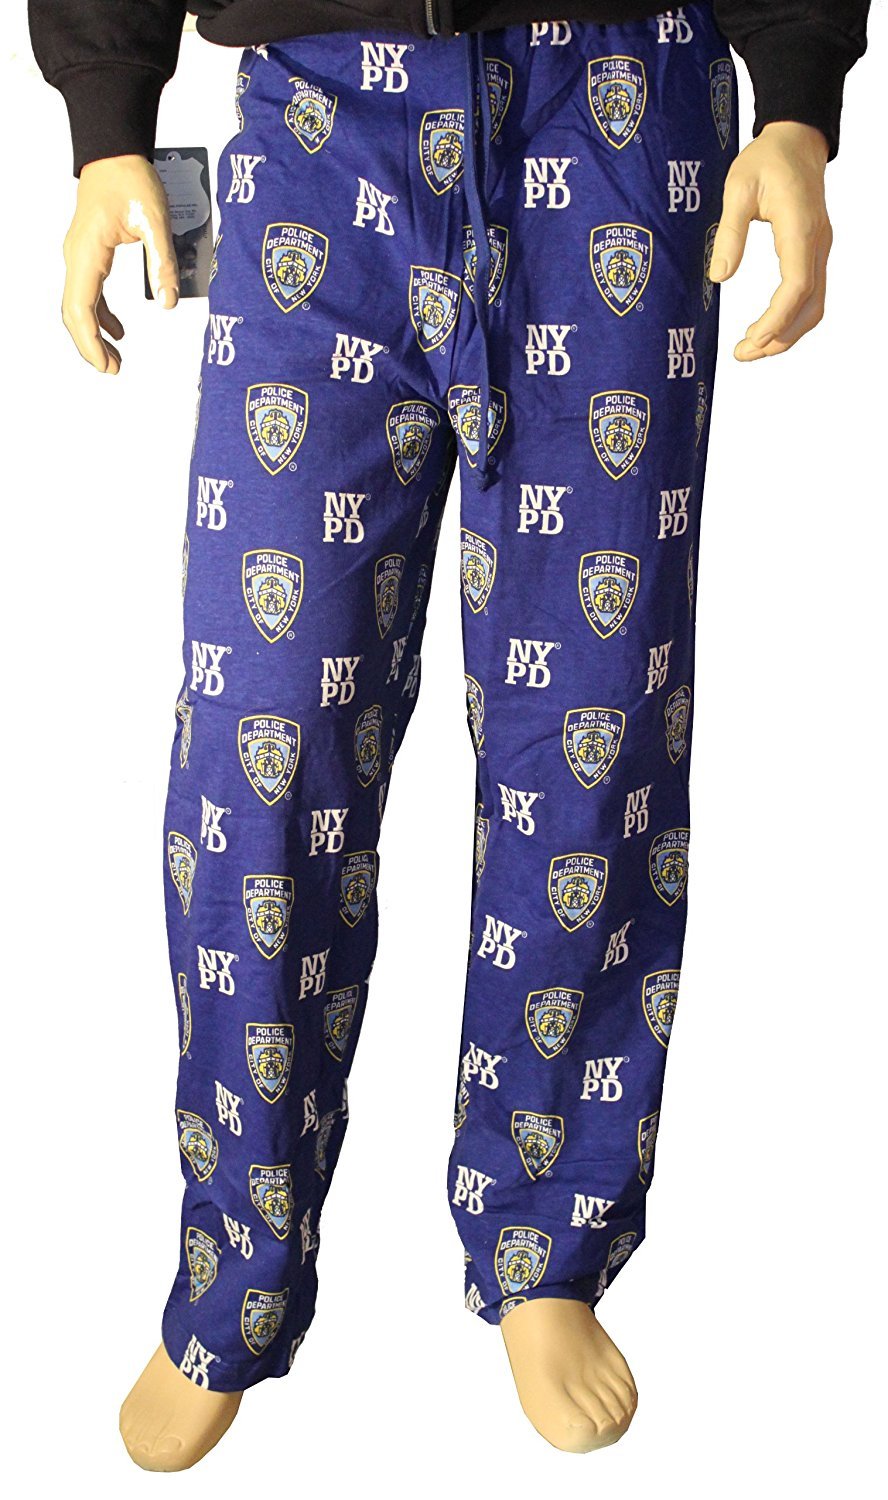 NYPD Lounge Pants Pajama Sleep Bottoms Blue